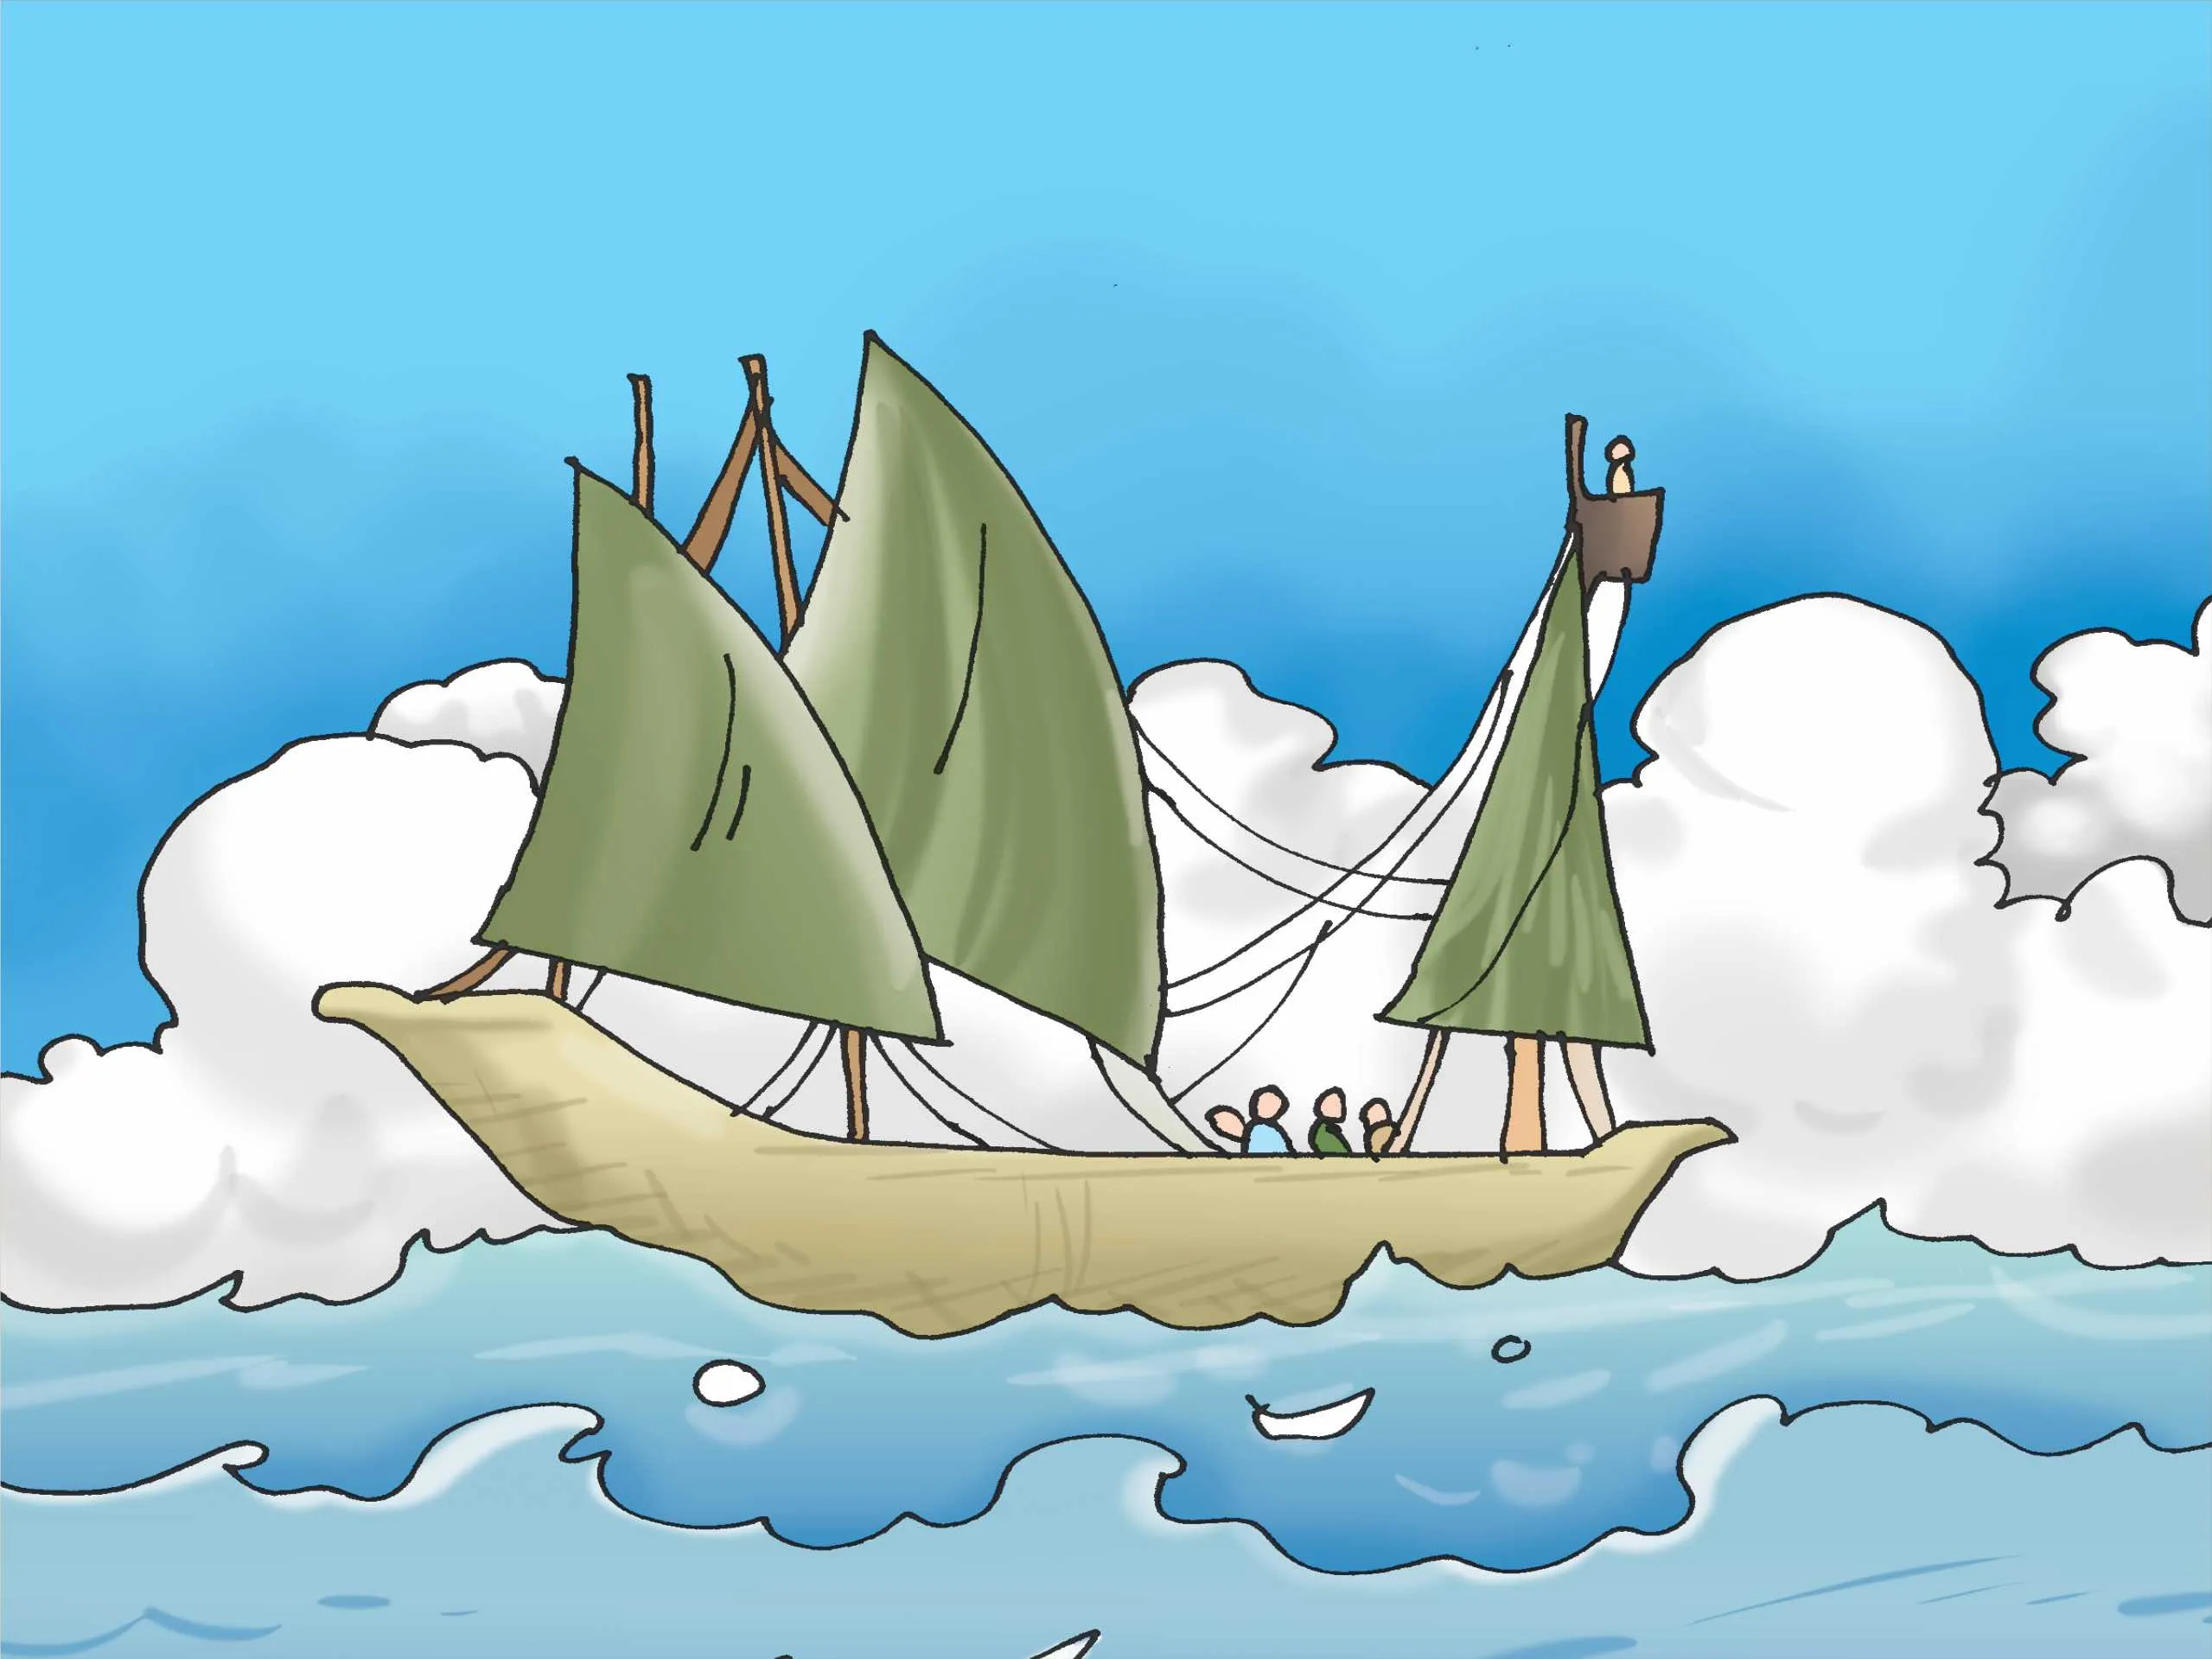 Boat in Sea cartoon image